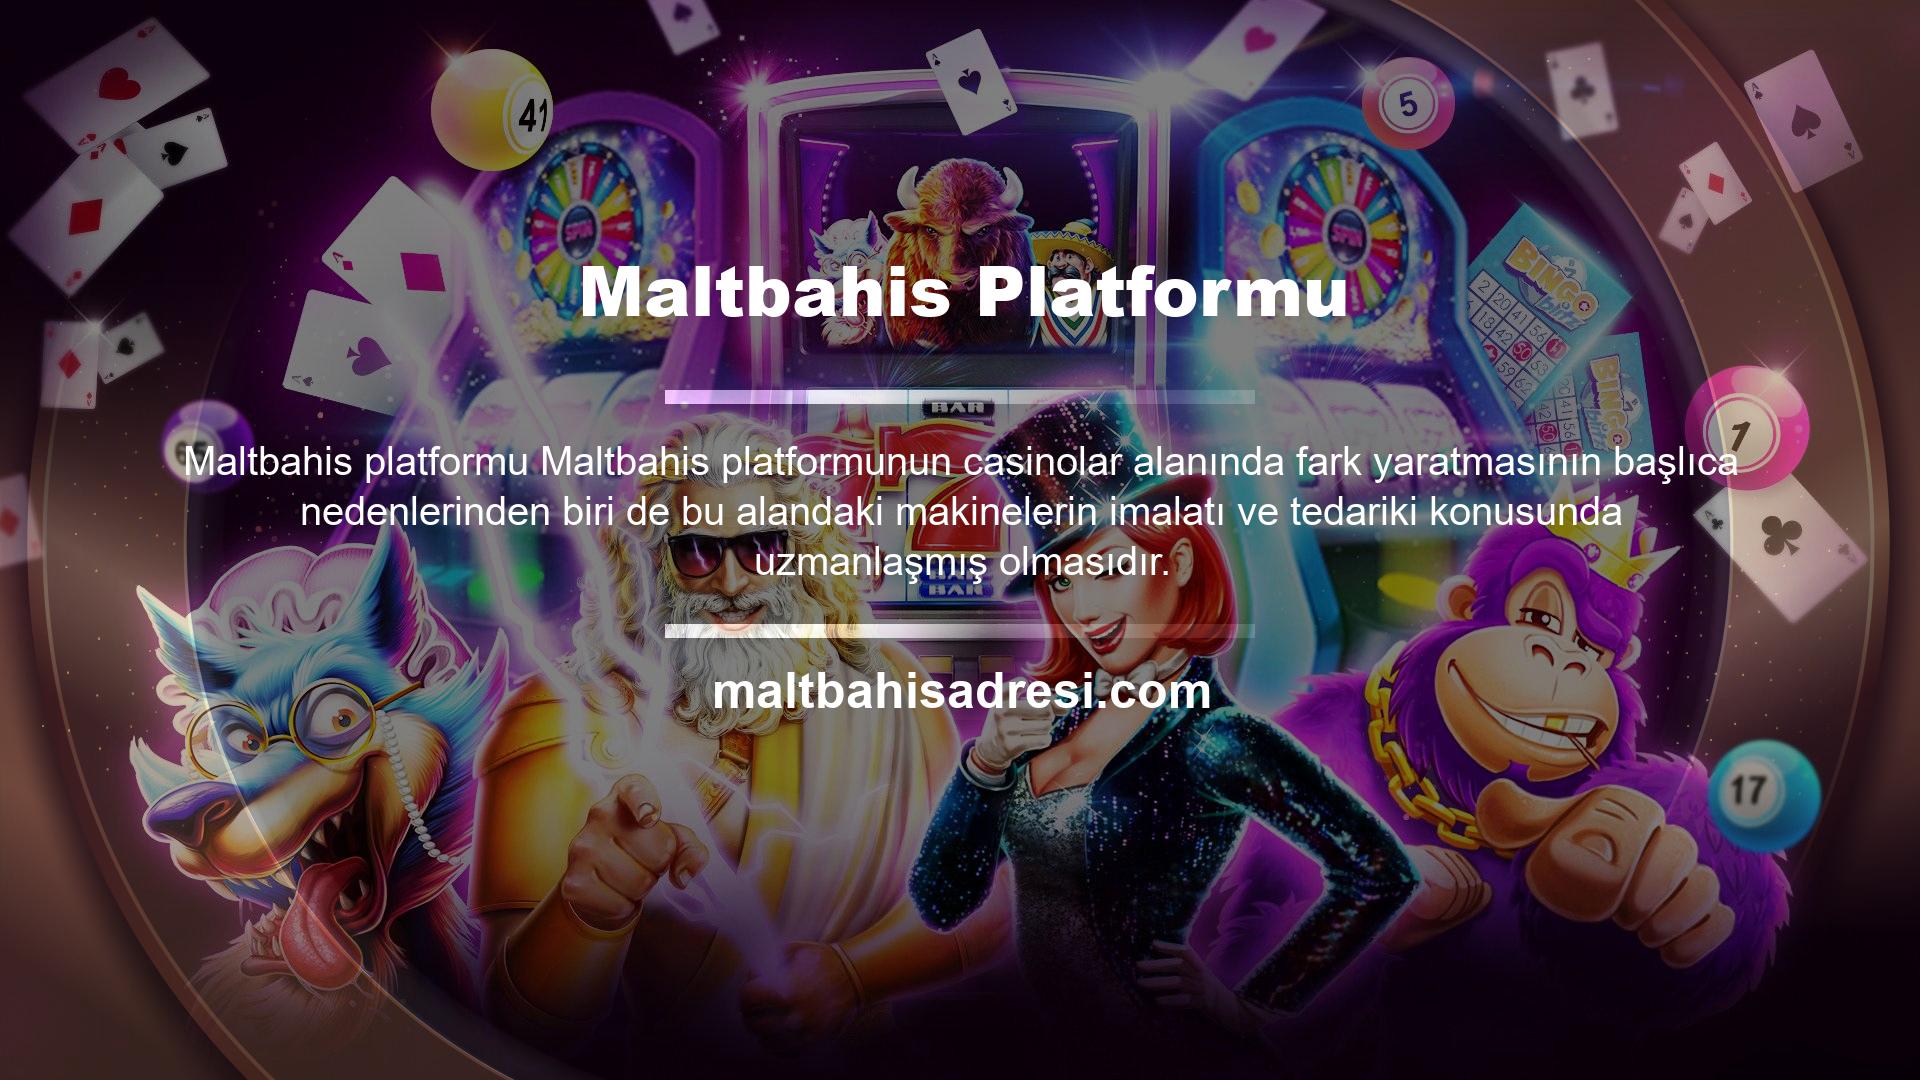 Maltbahis platform yöneticisi ve ekibi tarafından yazılan geleneksel makine sistemi, Avrupa'da birçok ülkede/bölgede kullanılmaktadır